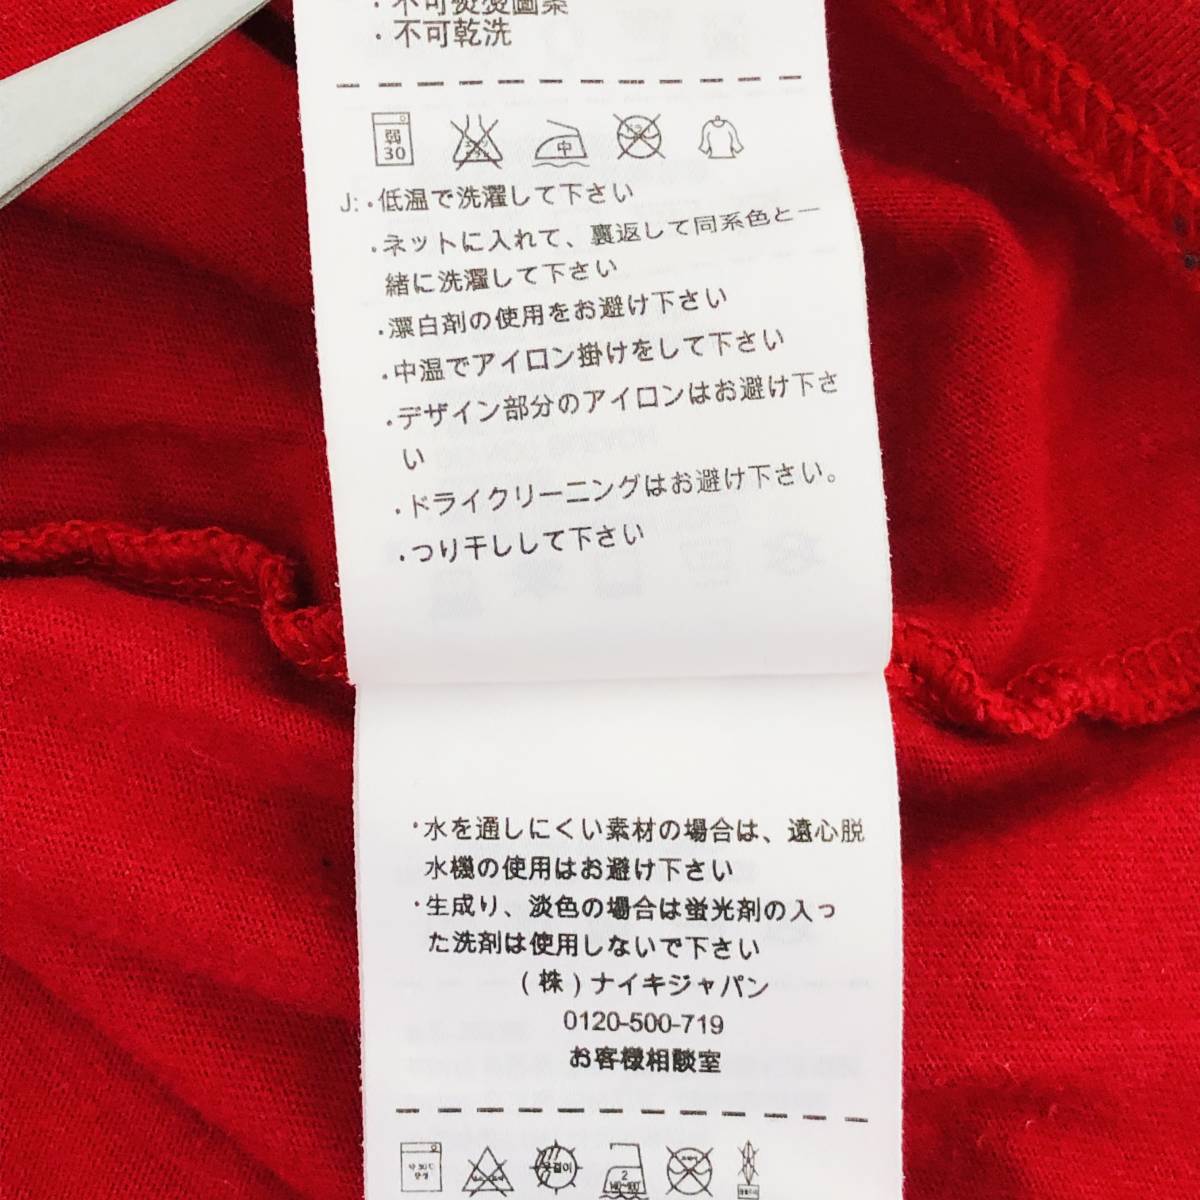 a01119 美品 NIKE ナイキ レディース Tシャツ 半袖 丸首 カジュアル L レッド 赤 ビッグロゴ 綿100% 万能 シンプルデイリーカジュアル_画像10